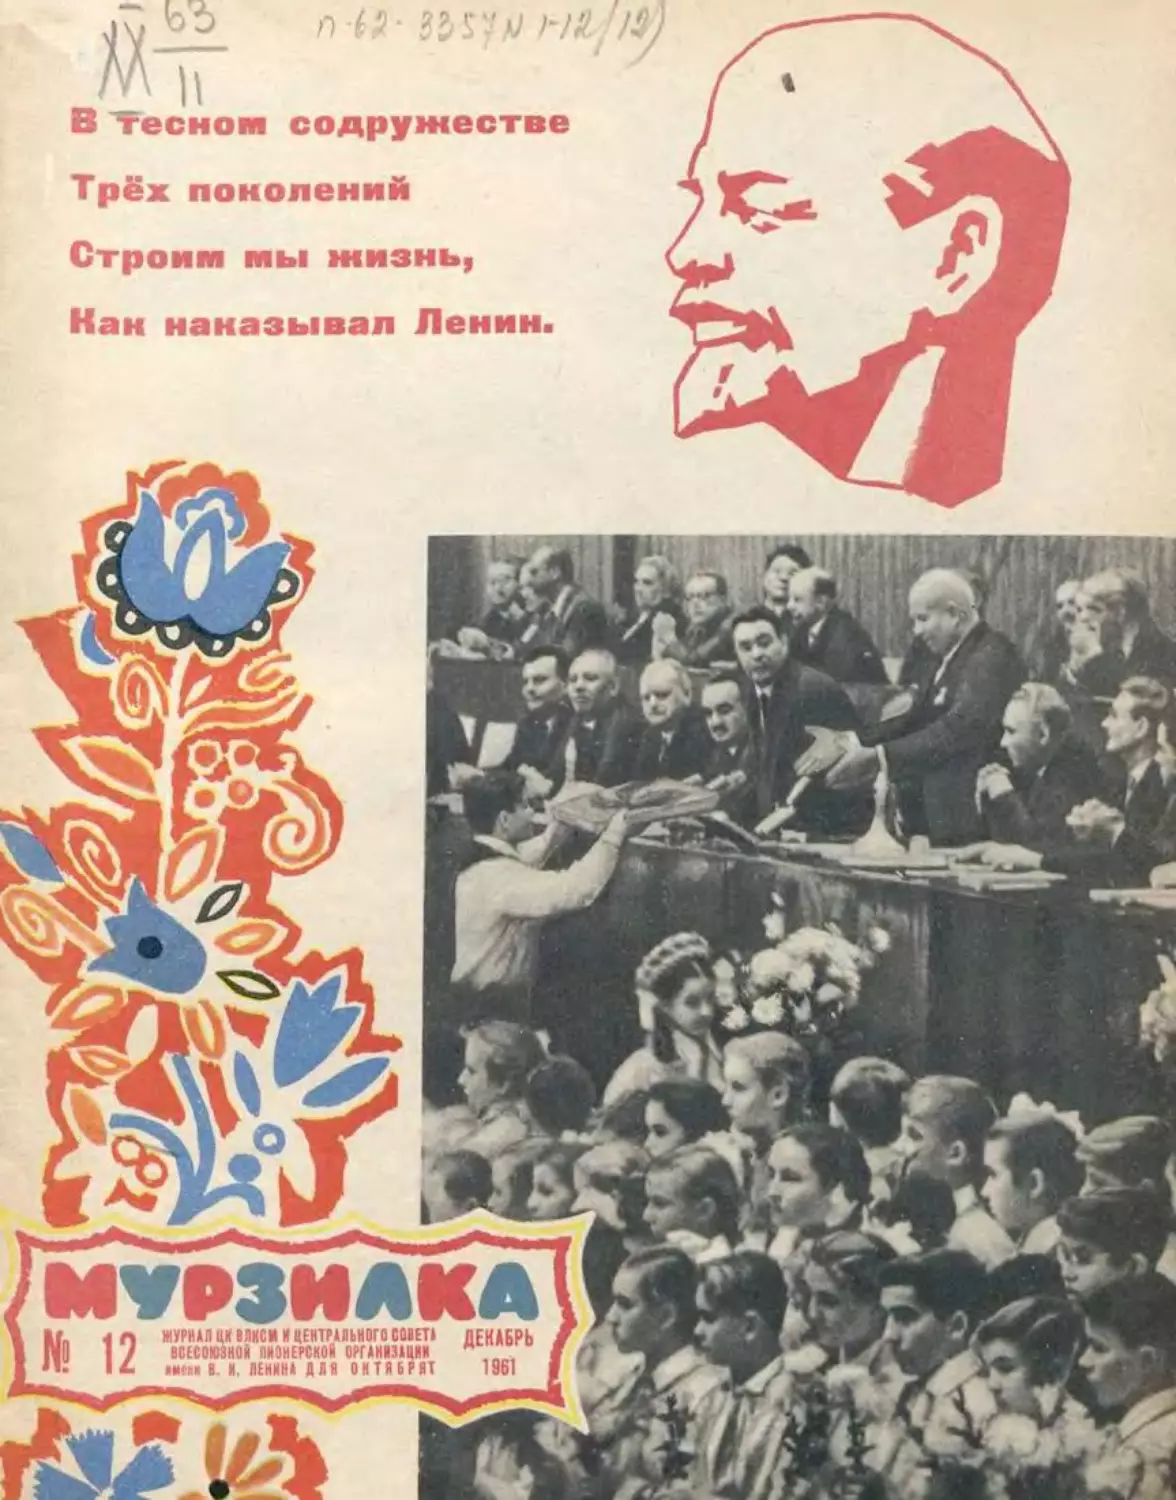 Мурзилка, 1961, 12